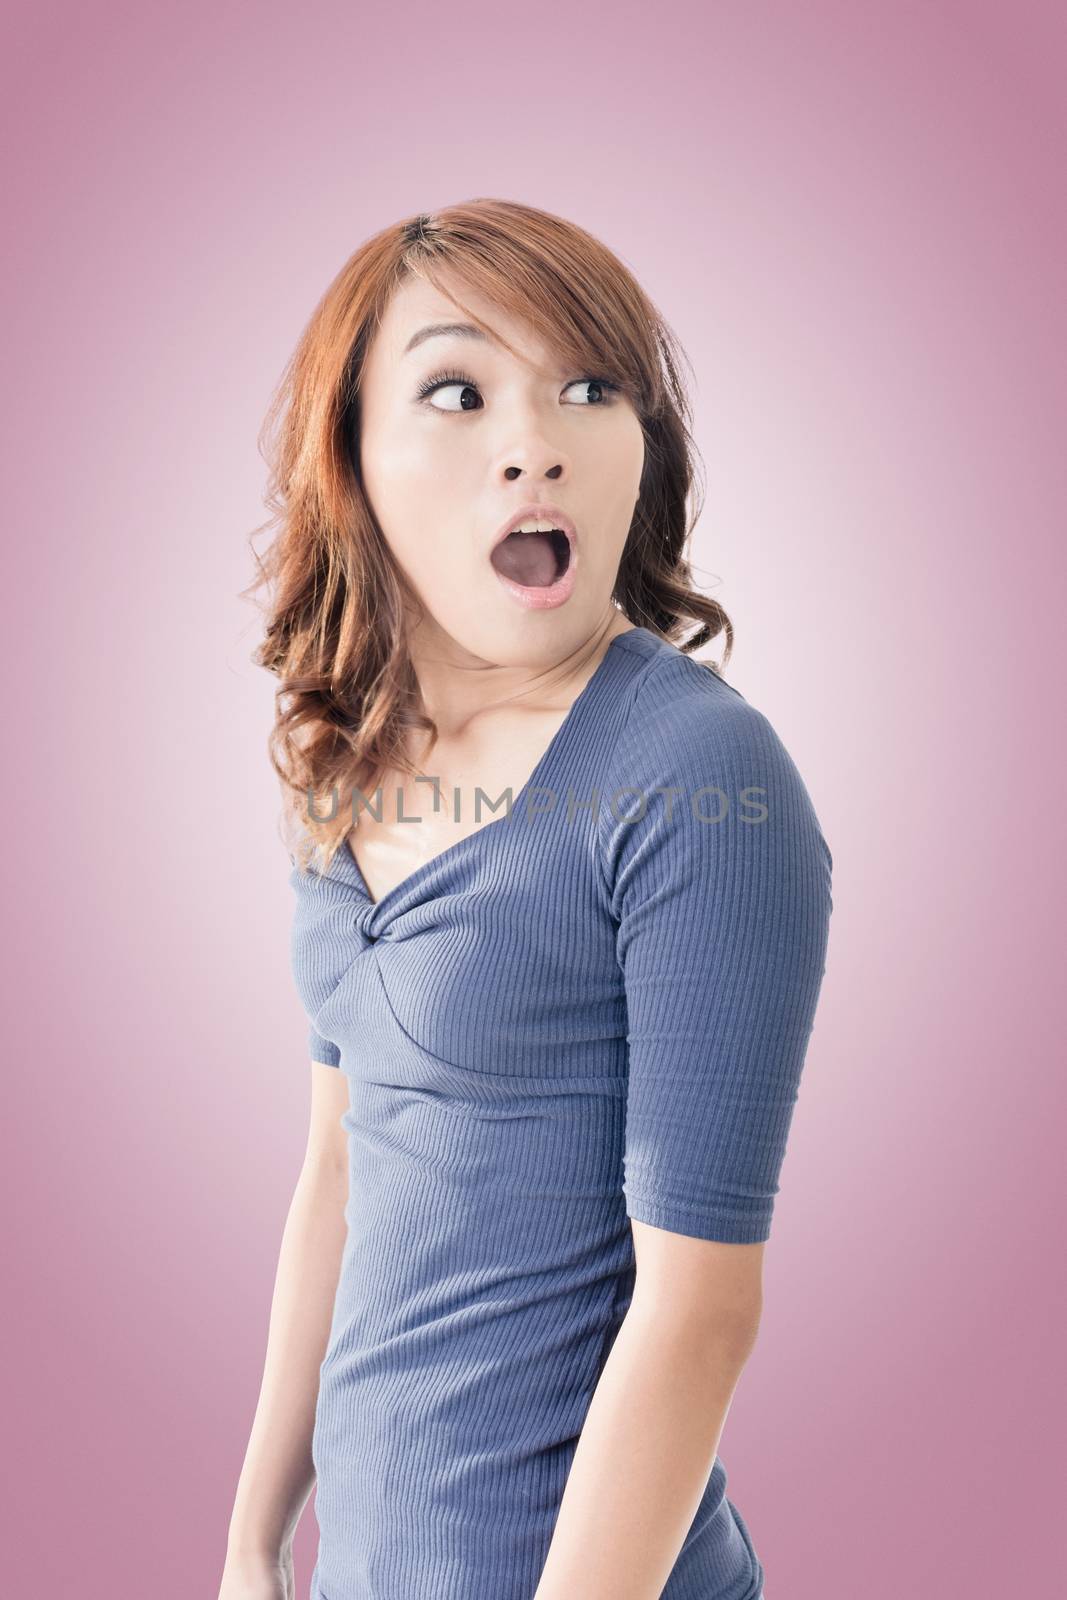 Surprised Asian woman by elwynn